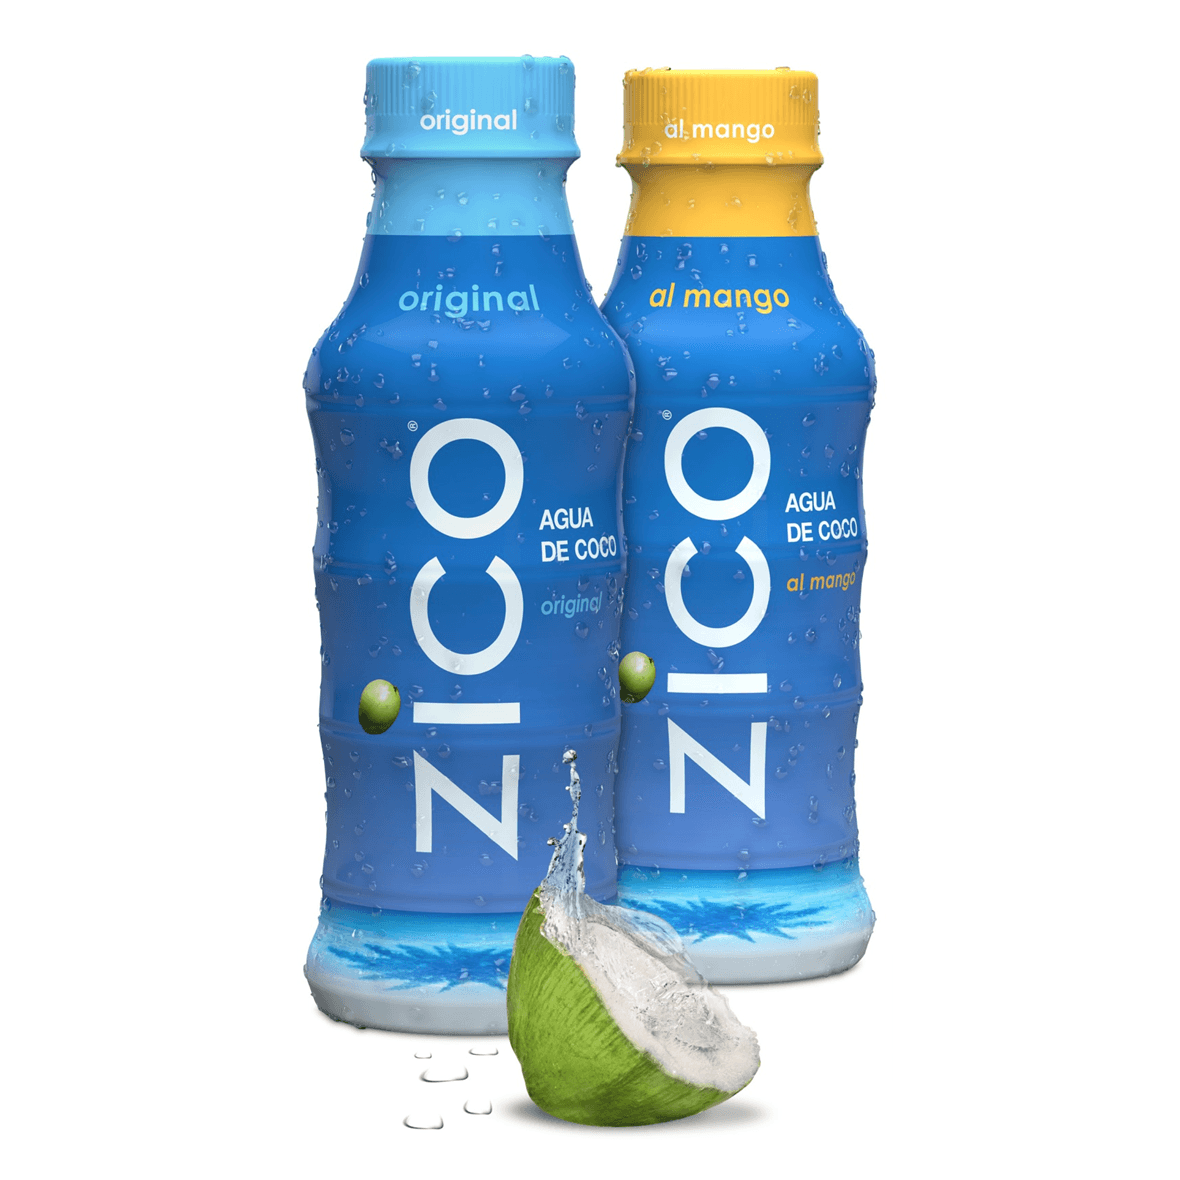 Zico Agua de Coco